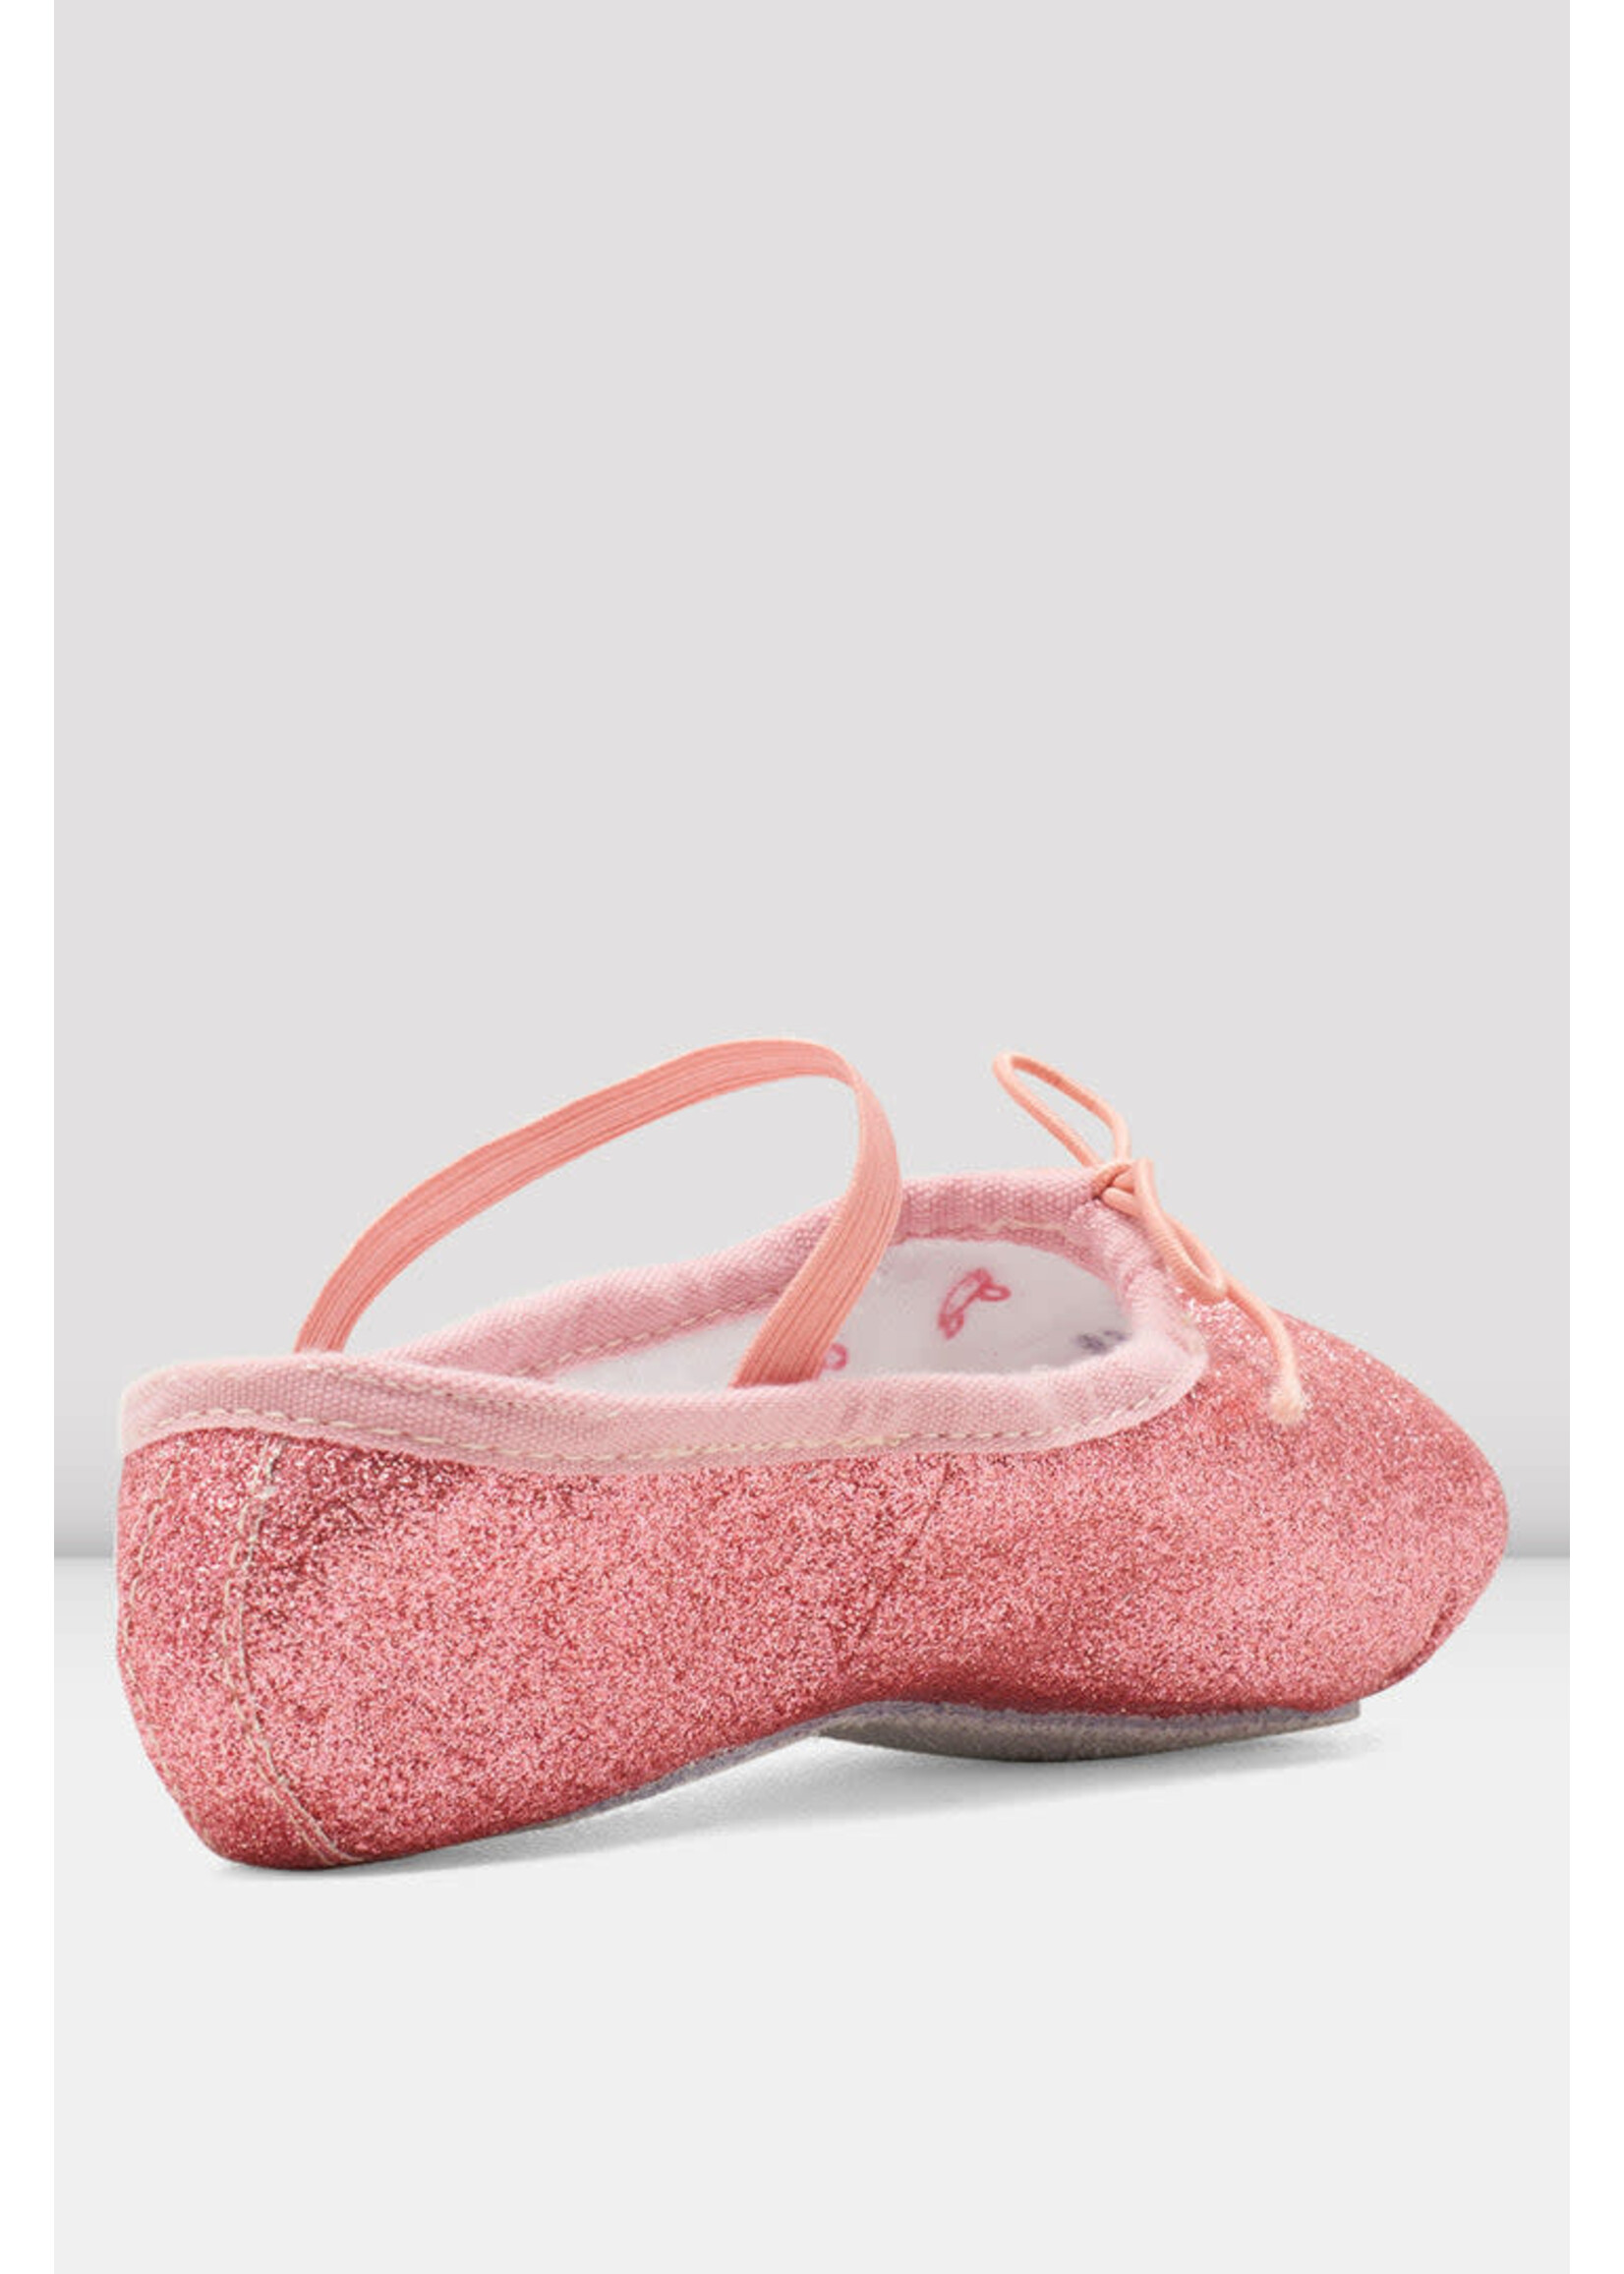 Bloch Bloch Bunnyhop Glitter Ballet Shoe